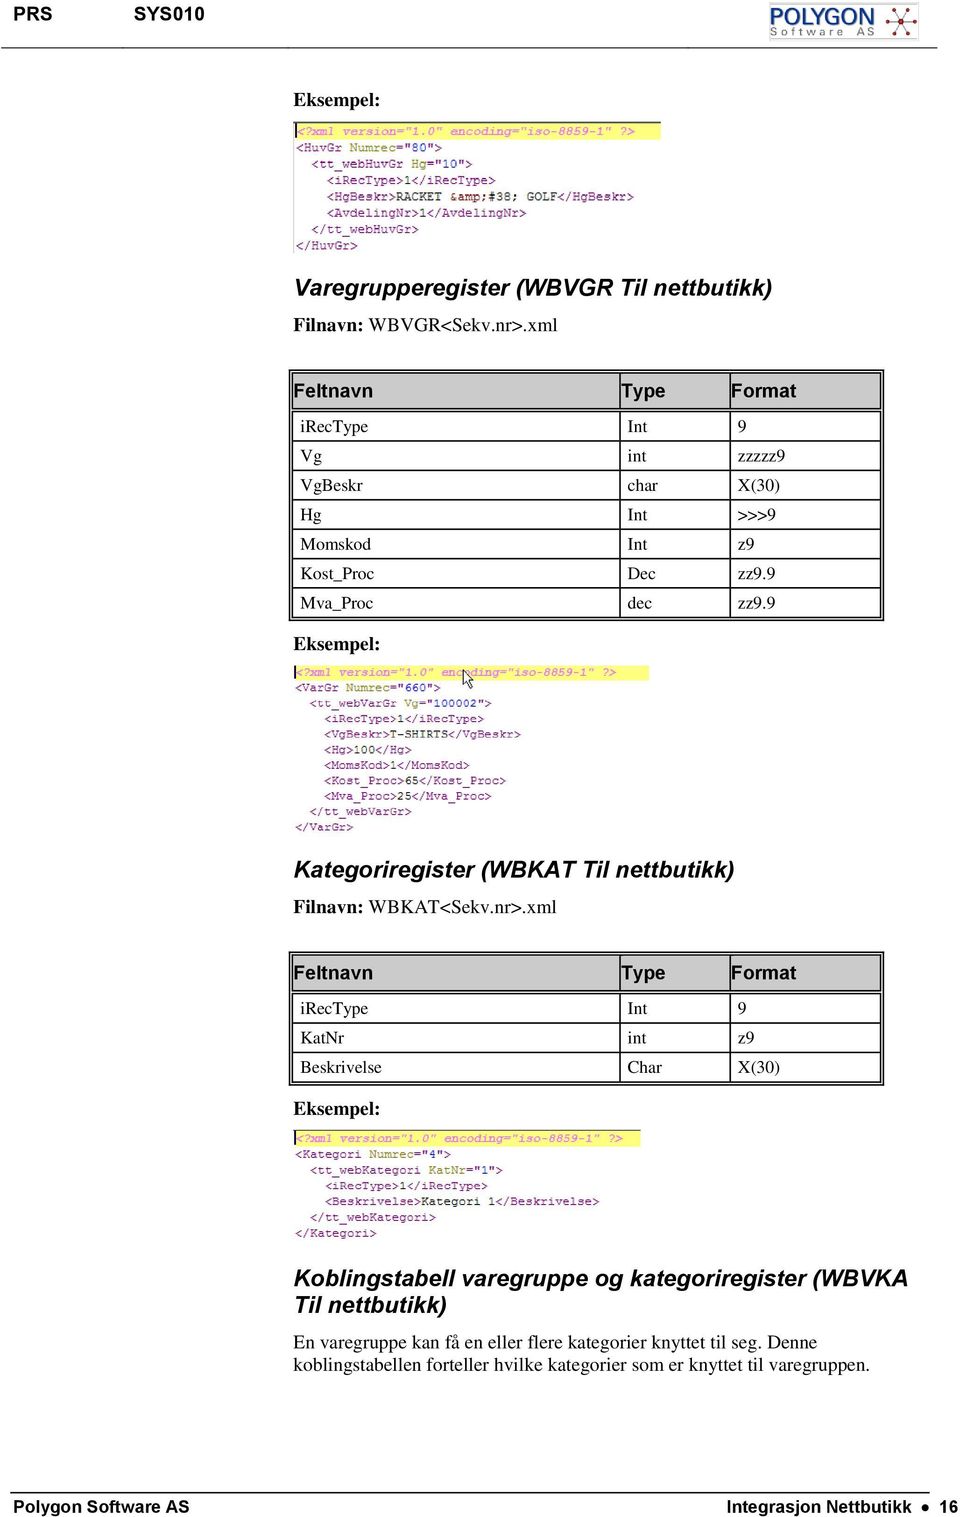 9 Kategoriregister (WBKAT Til nettbutikk) Filnavn: WBKAT<Sekv.nr>.